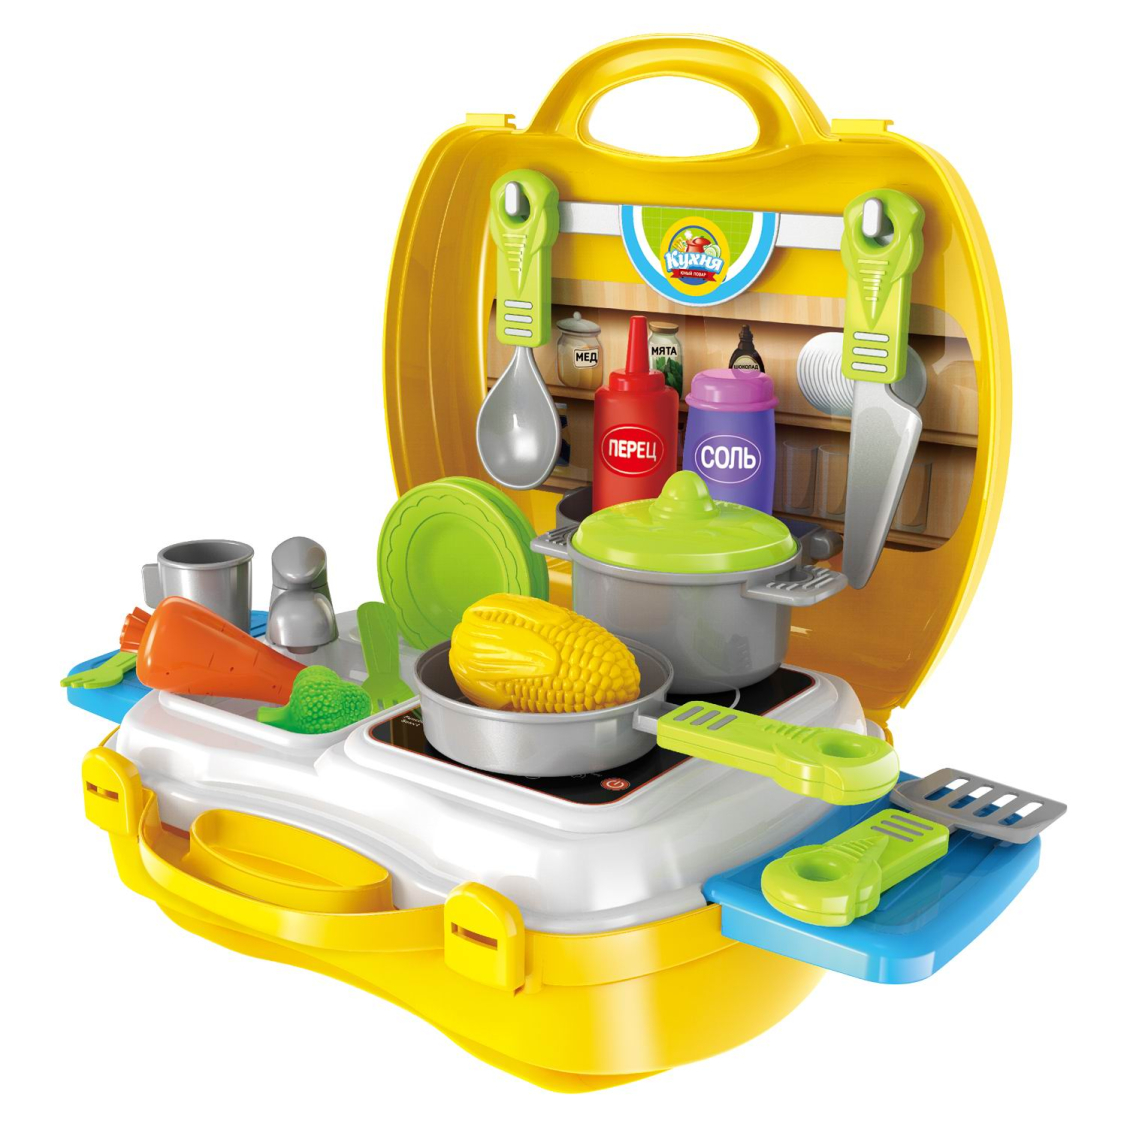 Детский игрушечный набор. Kitchen Dream кухня детская 3568 Toys. Kitchen Cooking детская кухня чемоданчик. Игровой набор кухня Kitchen Cooking. Игровой набор Mini Kitchen супермаркет 623204.